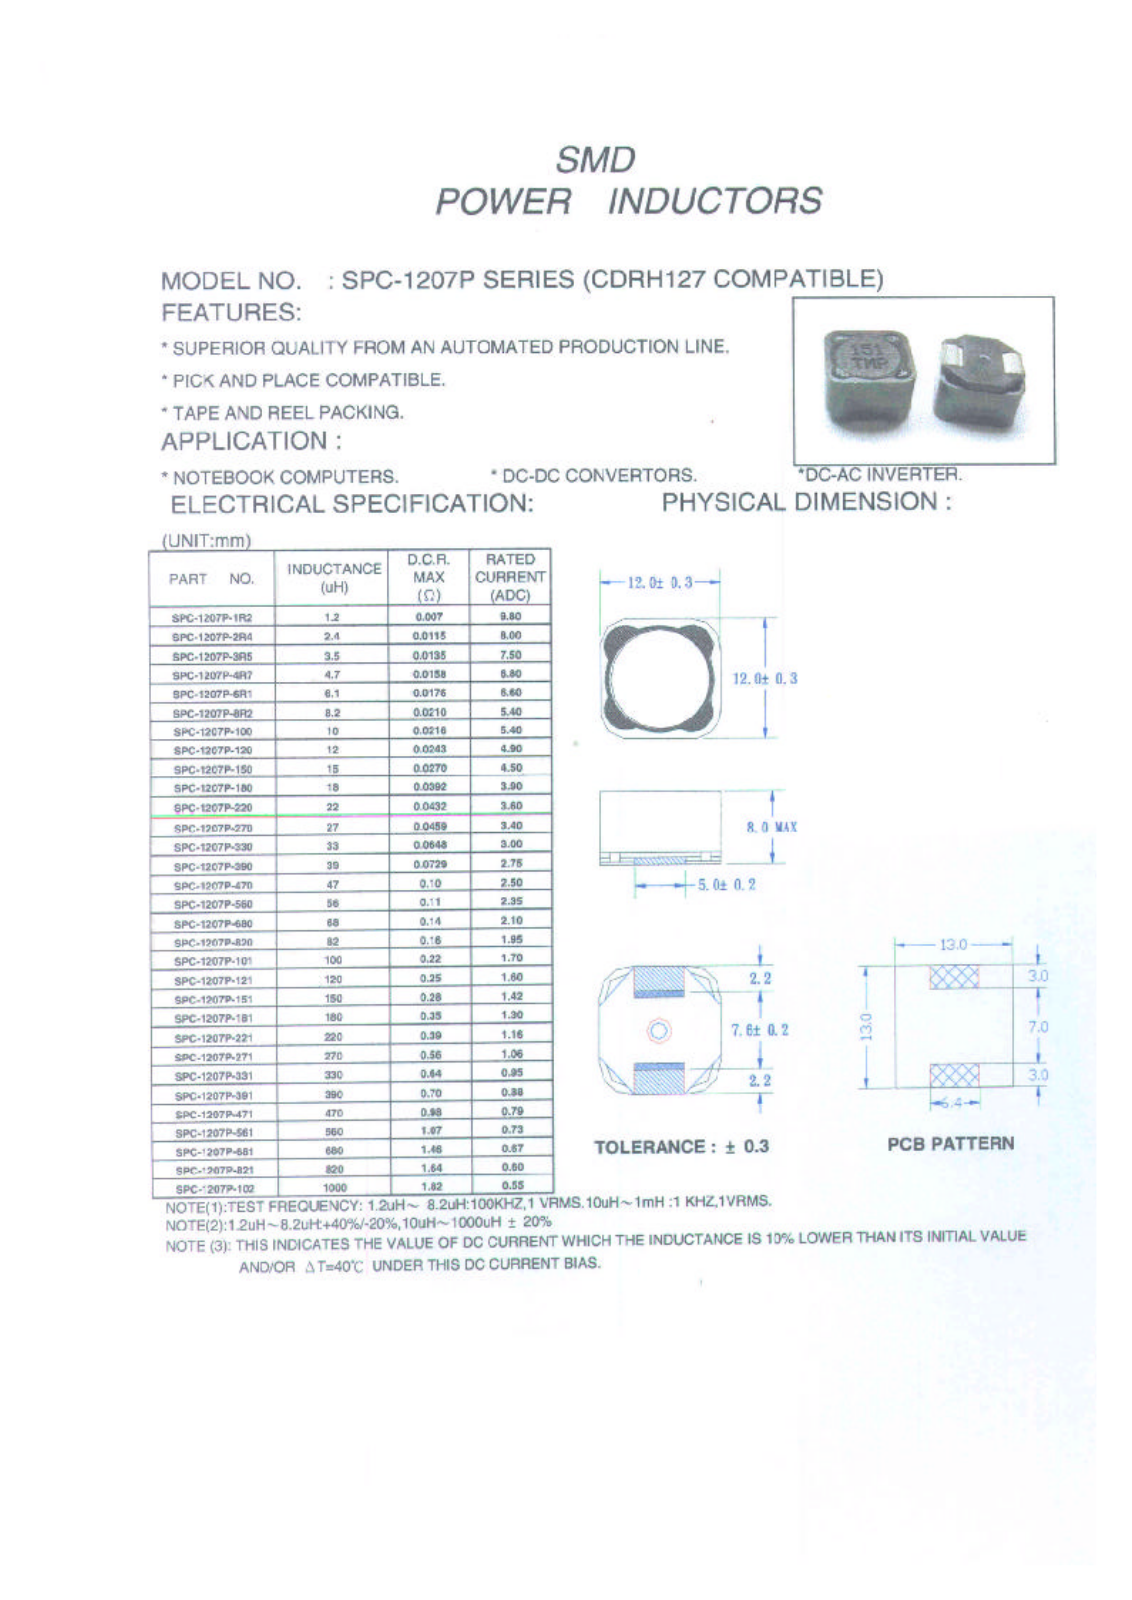 MICRO SPC-1207P-8R2, SPC-1207P-100, SPC-1207P-101, SPC-1207P-102, SPC-1207P-120 Datasheet